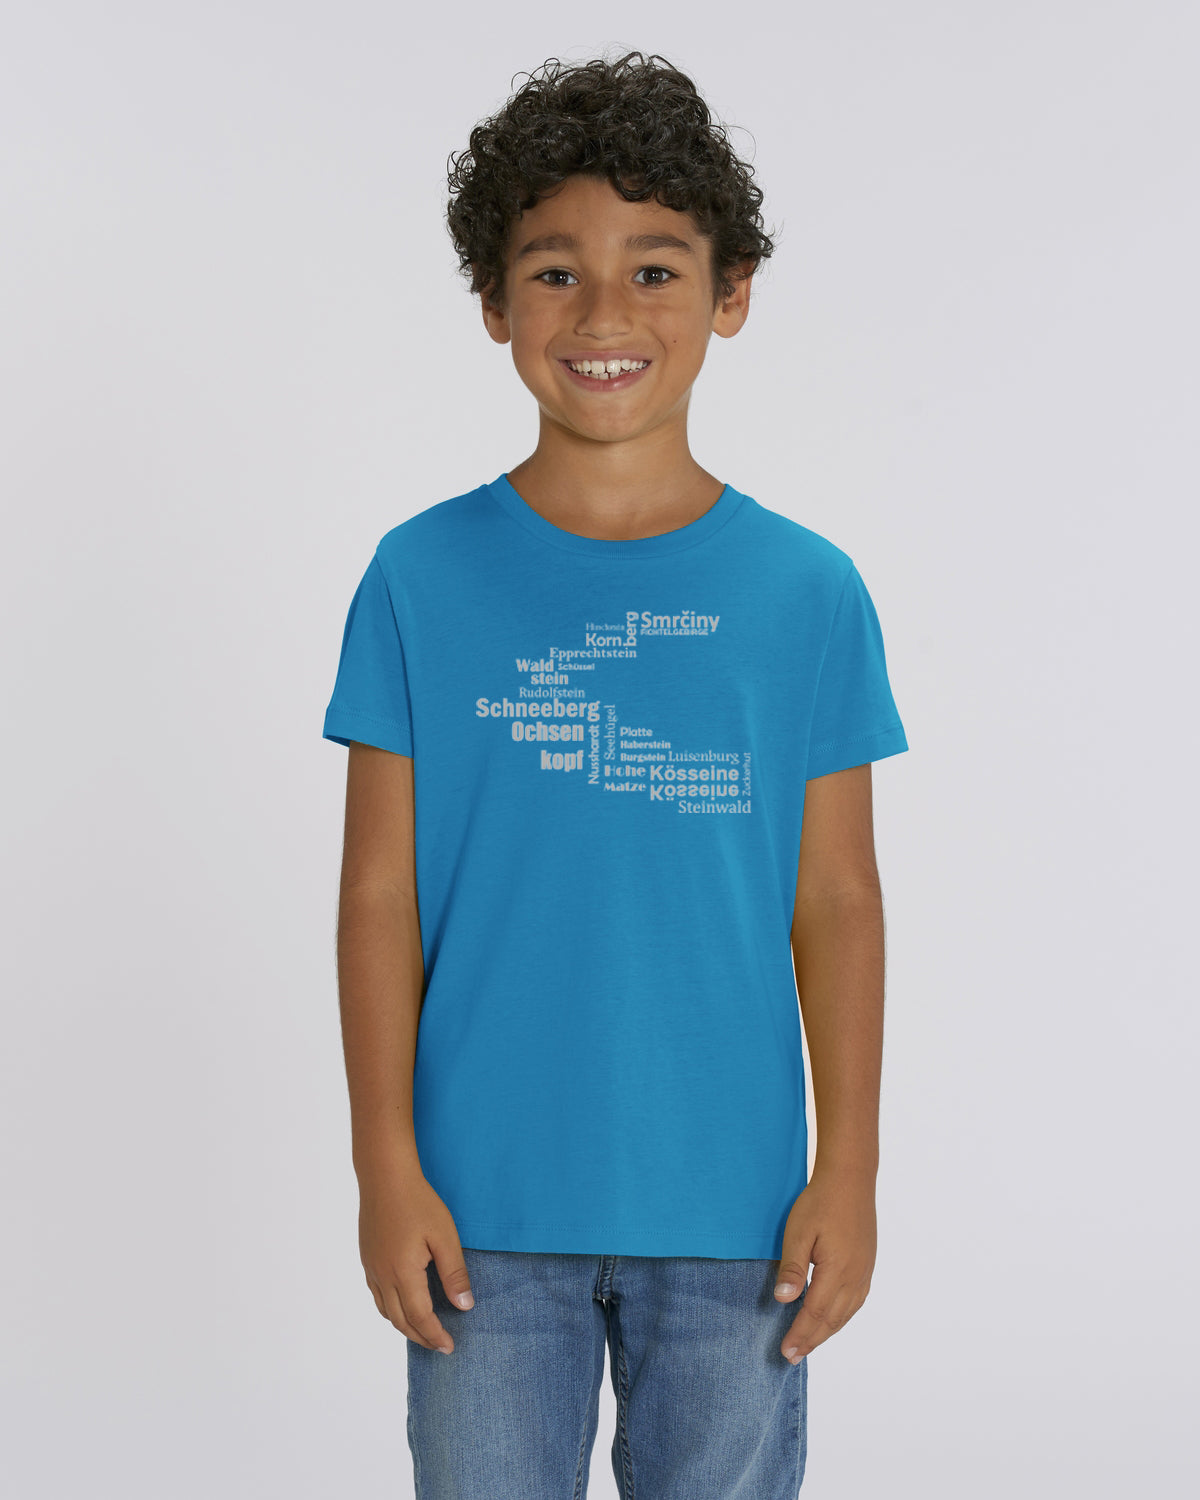 "Hufeisen - Fichtelsachen" - ICONIC BIO T-Shirt Kids